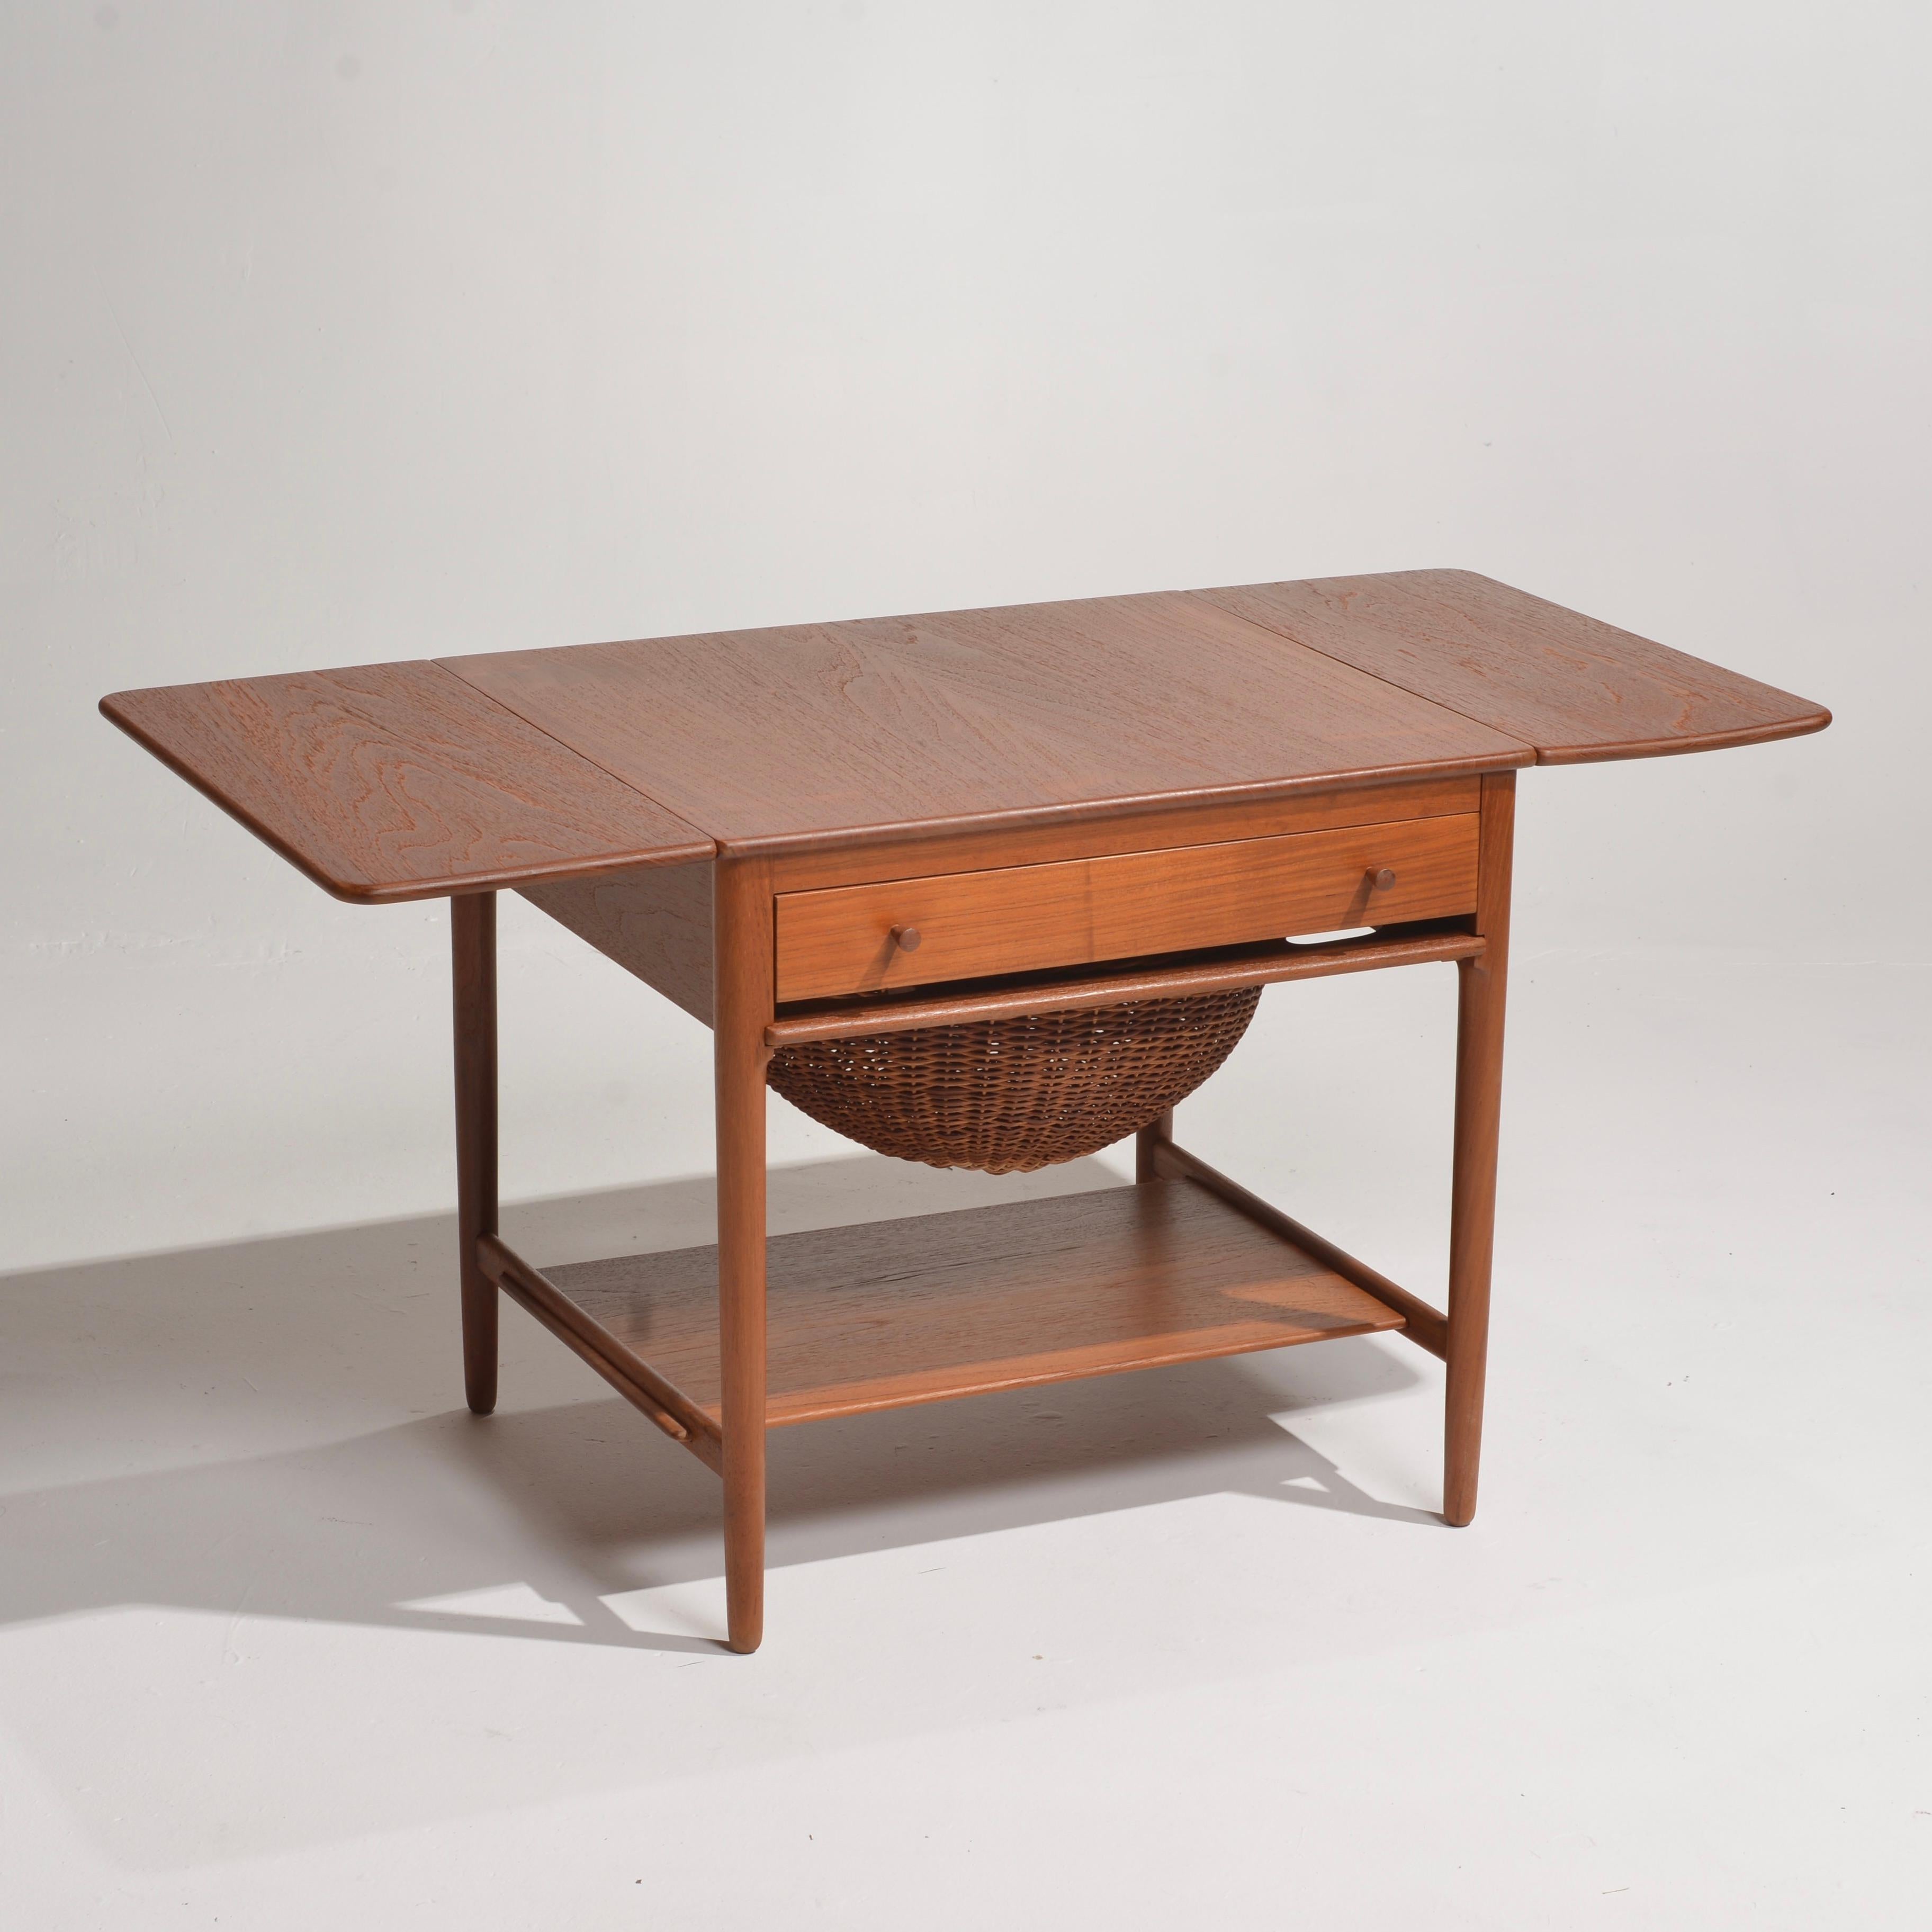 Magnifique table de couture modèle AT-33 conçue par Hans Wegner et fabriquée au Danemark par l'ébéniste Andreas Tuck. Cette table en teck et en chêne est dotée de deux allonges, d'un tiroir avec compartiments pour les articles de couture, d'un